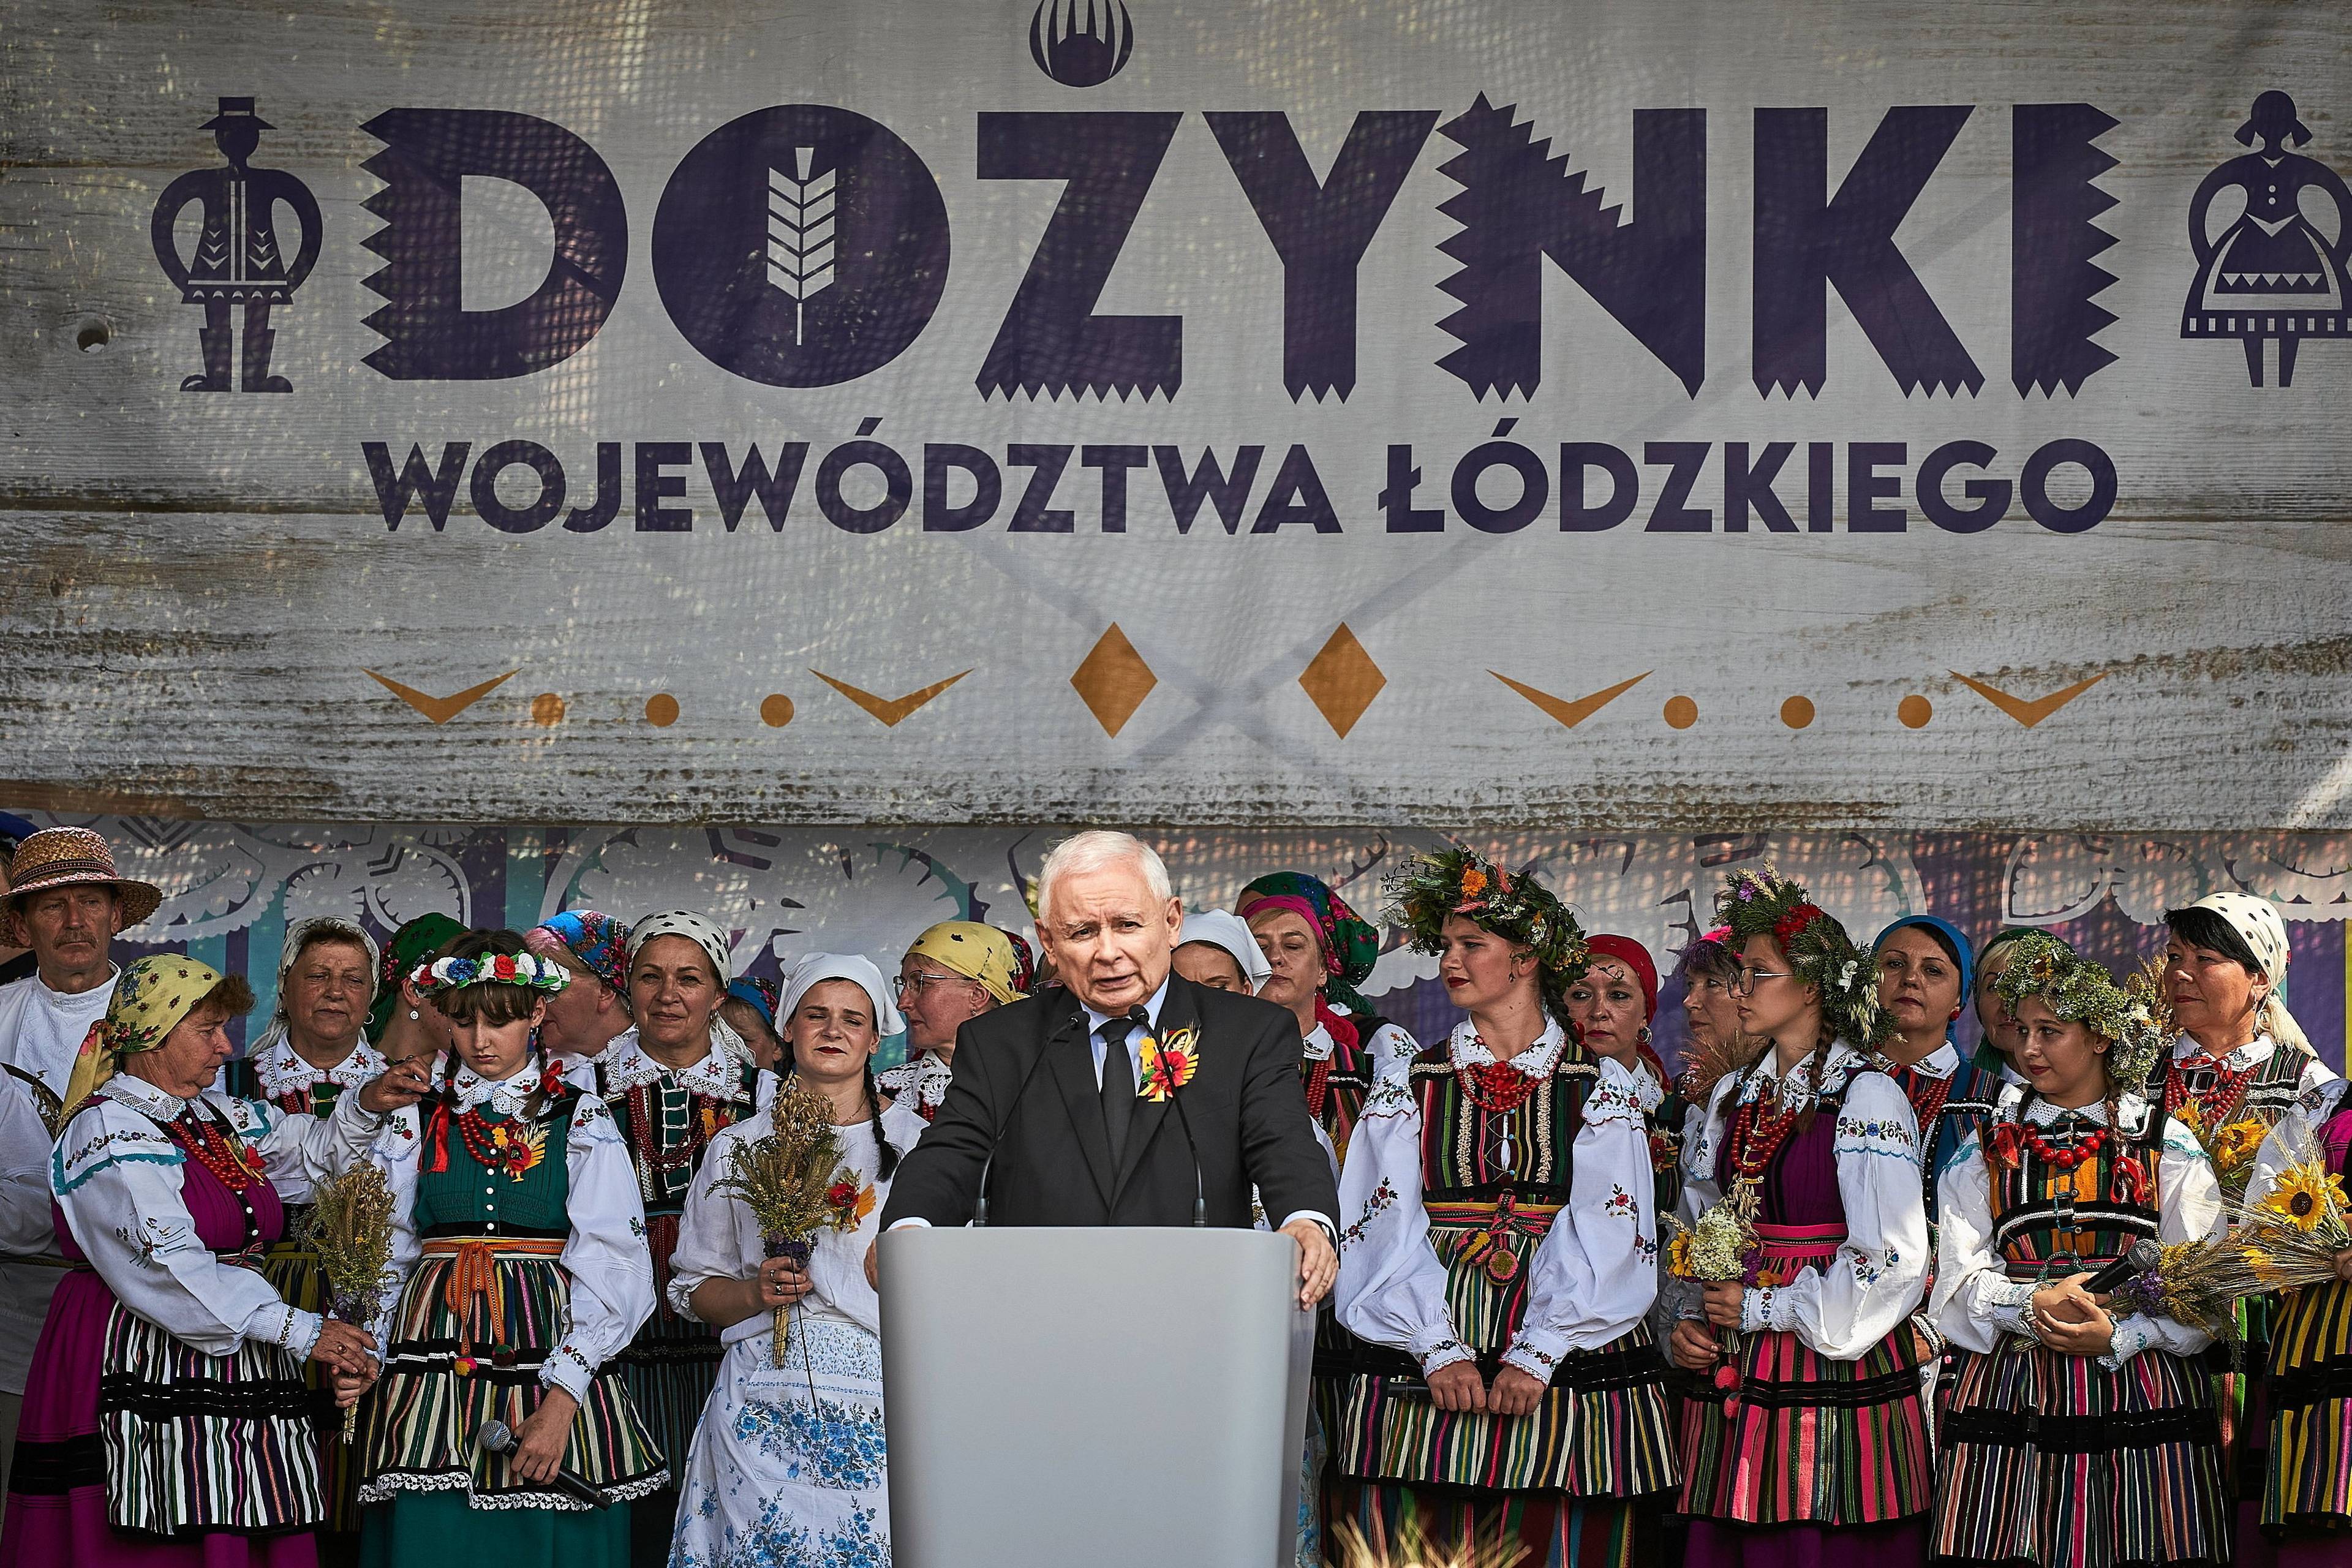 Jarosław Kaczyński przemawia pod wielkim napisem "Dożynki województwa łódzkiego". W tle kobiety w strojach ludowych.